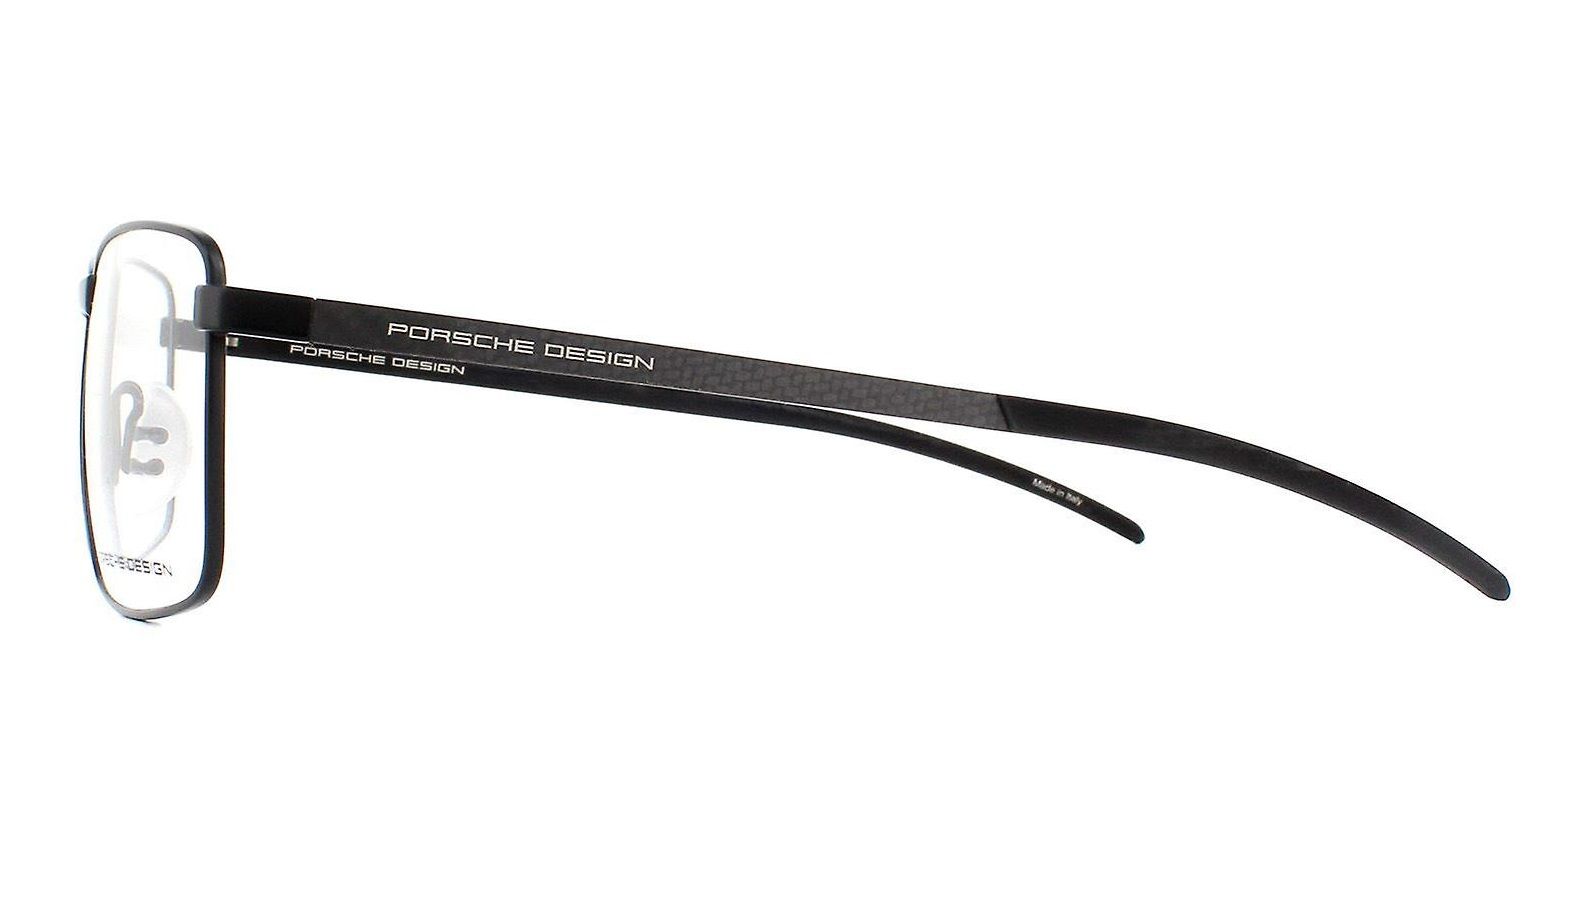  Porsche Design P 8325 A carbon fiber temples eyeglasses 